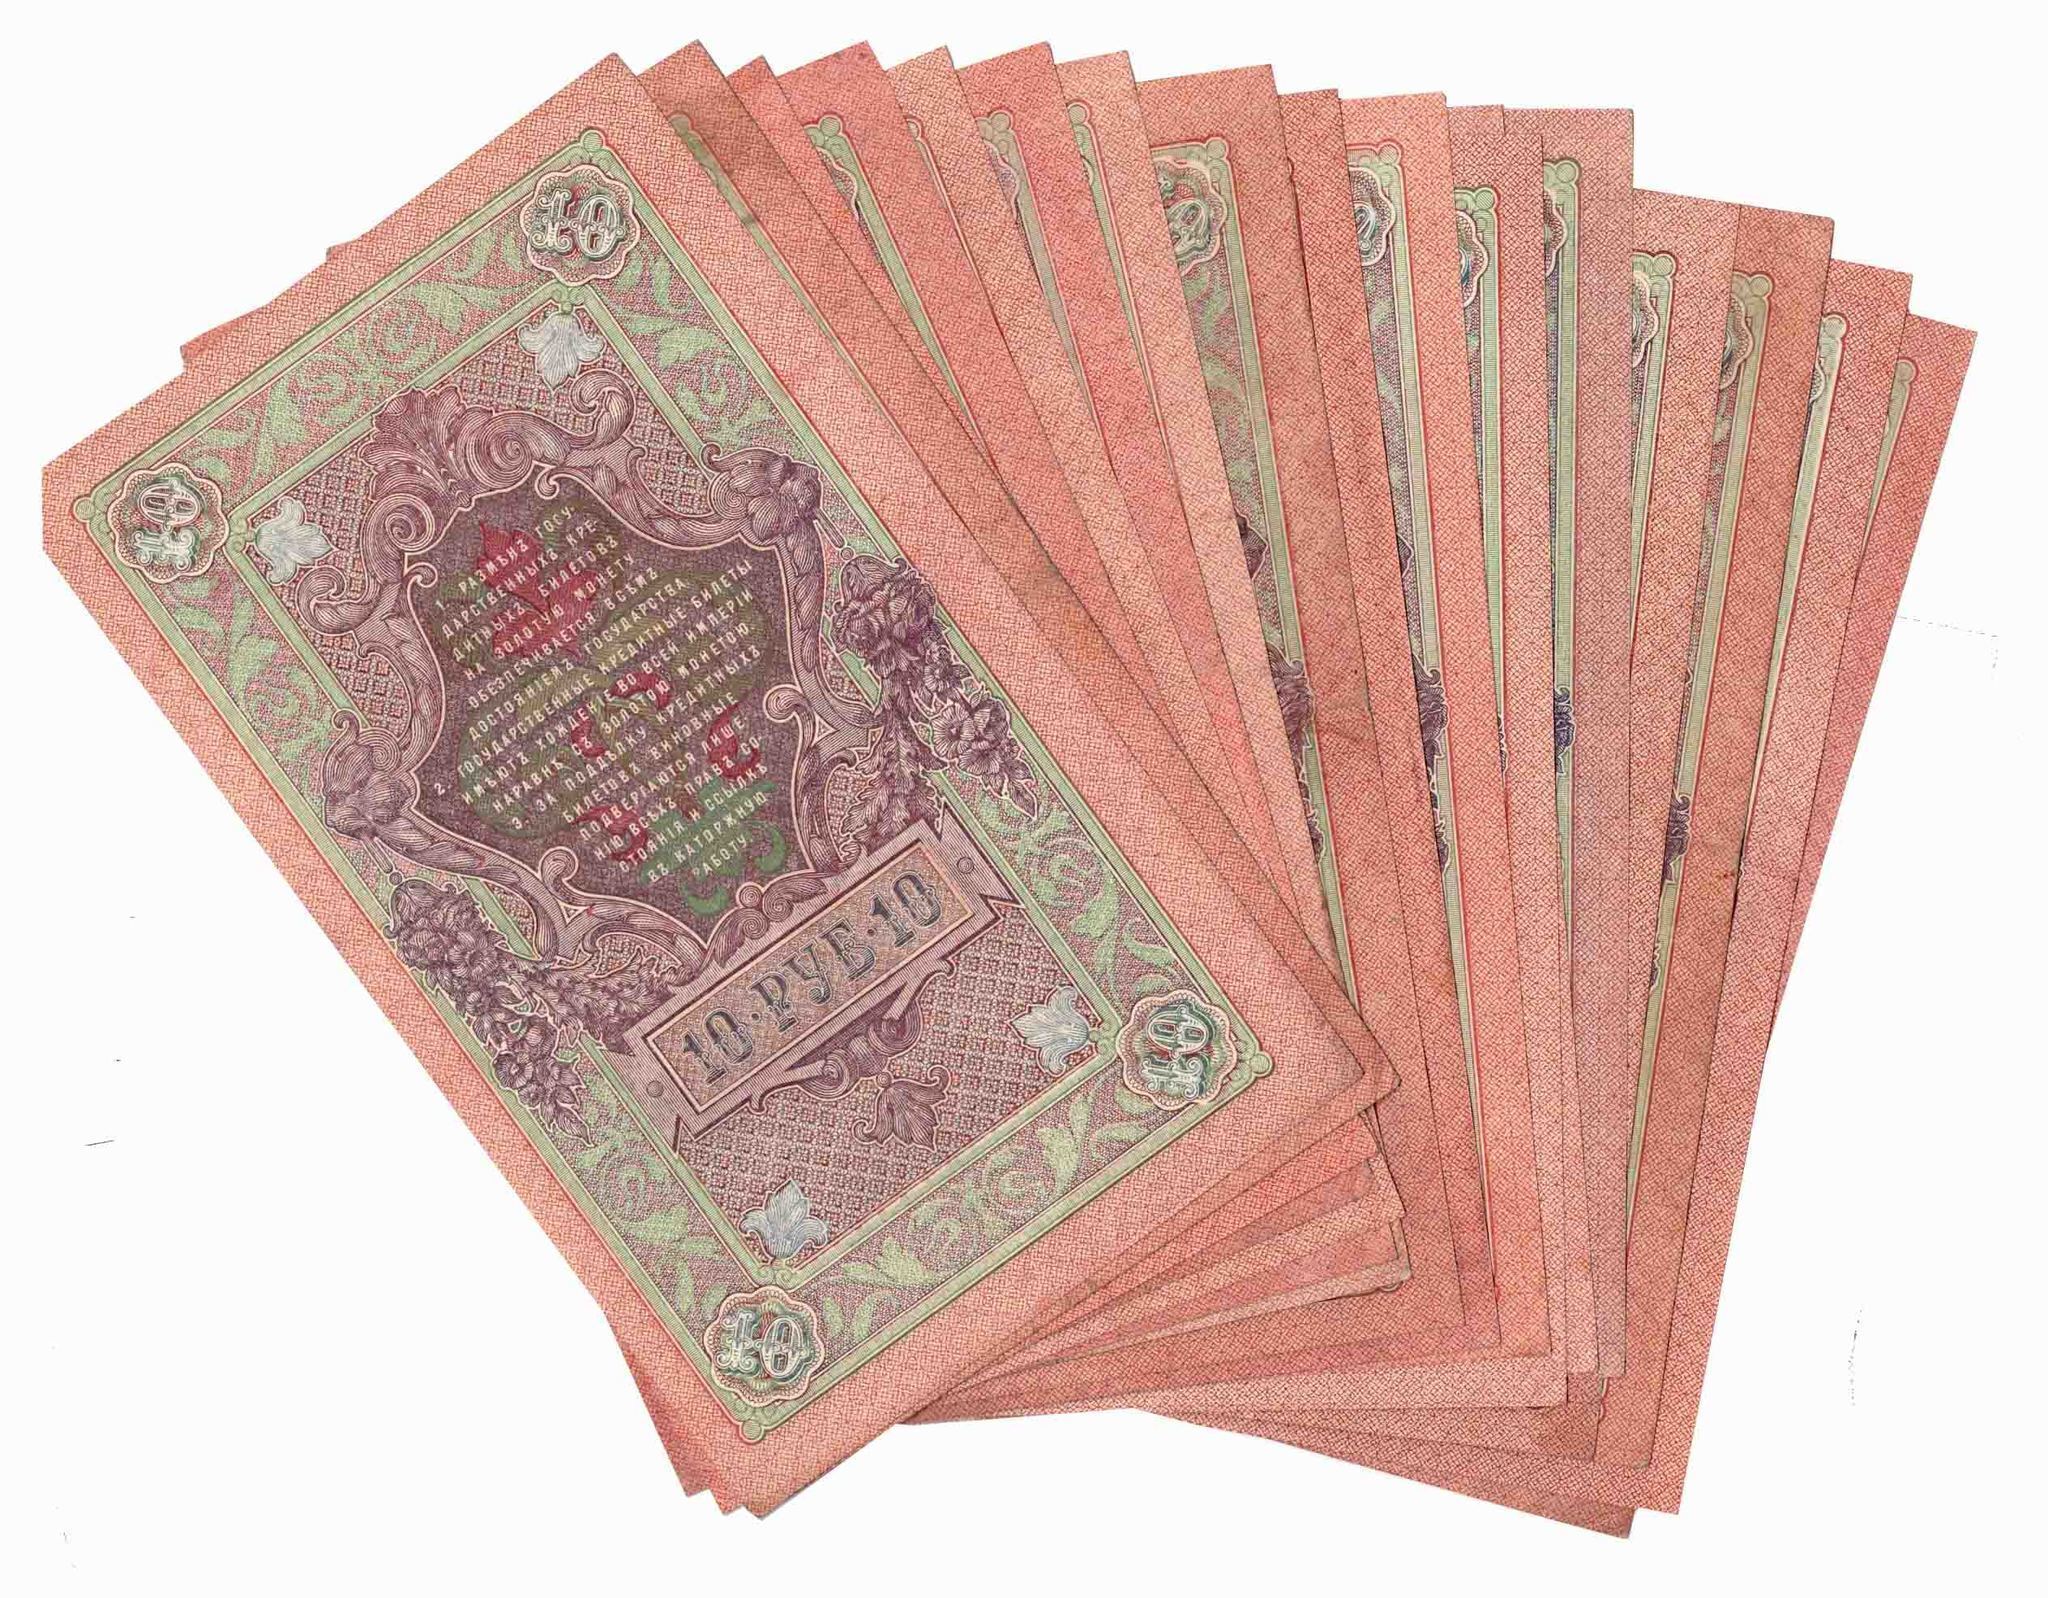 Купюра 1909. Купюра 1909 года. Пачка царских банкнот. Кредитный билет 10 рублей 1909 года цена бумажный стоимость.